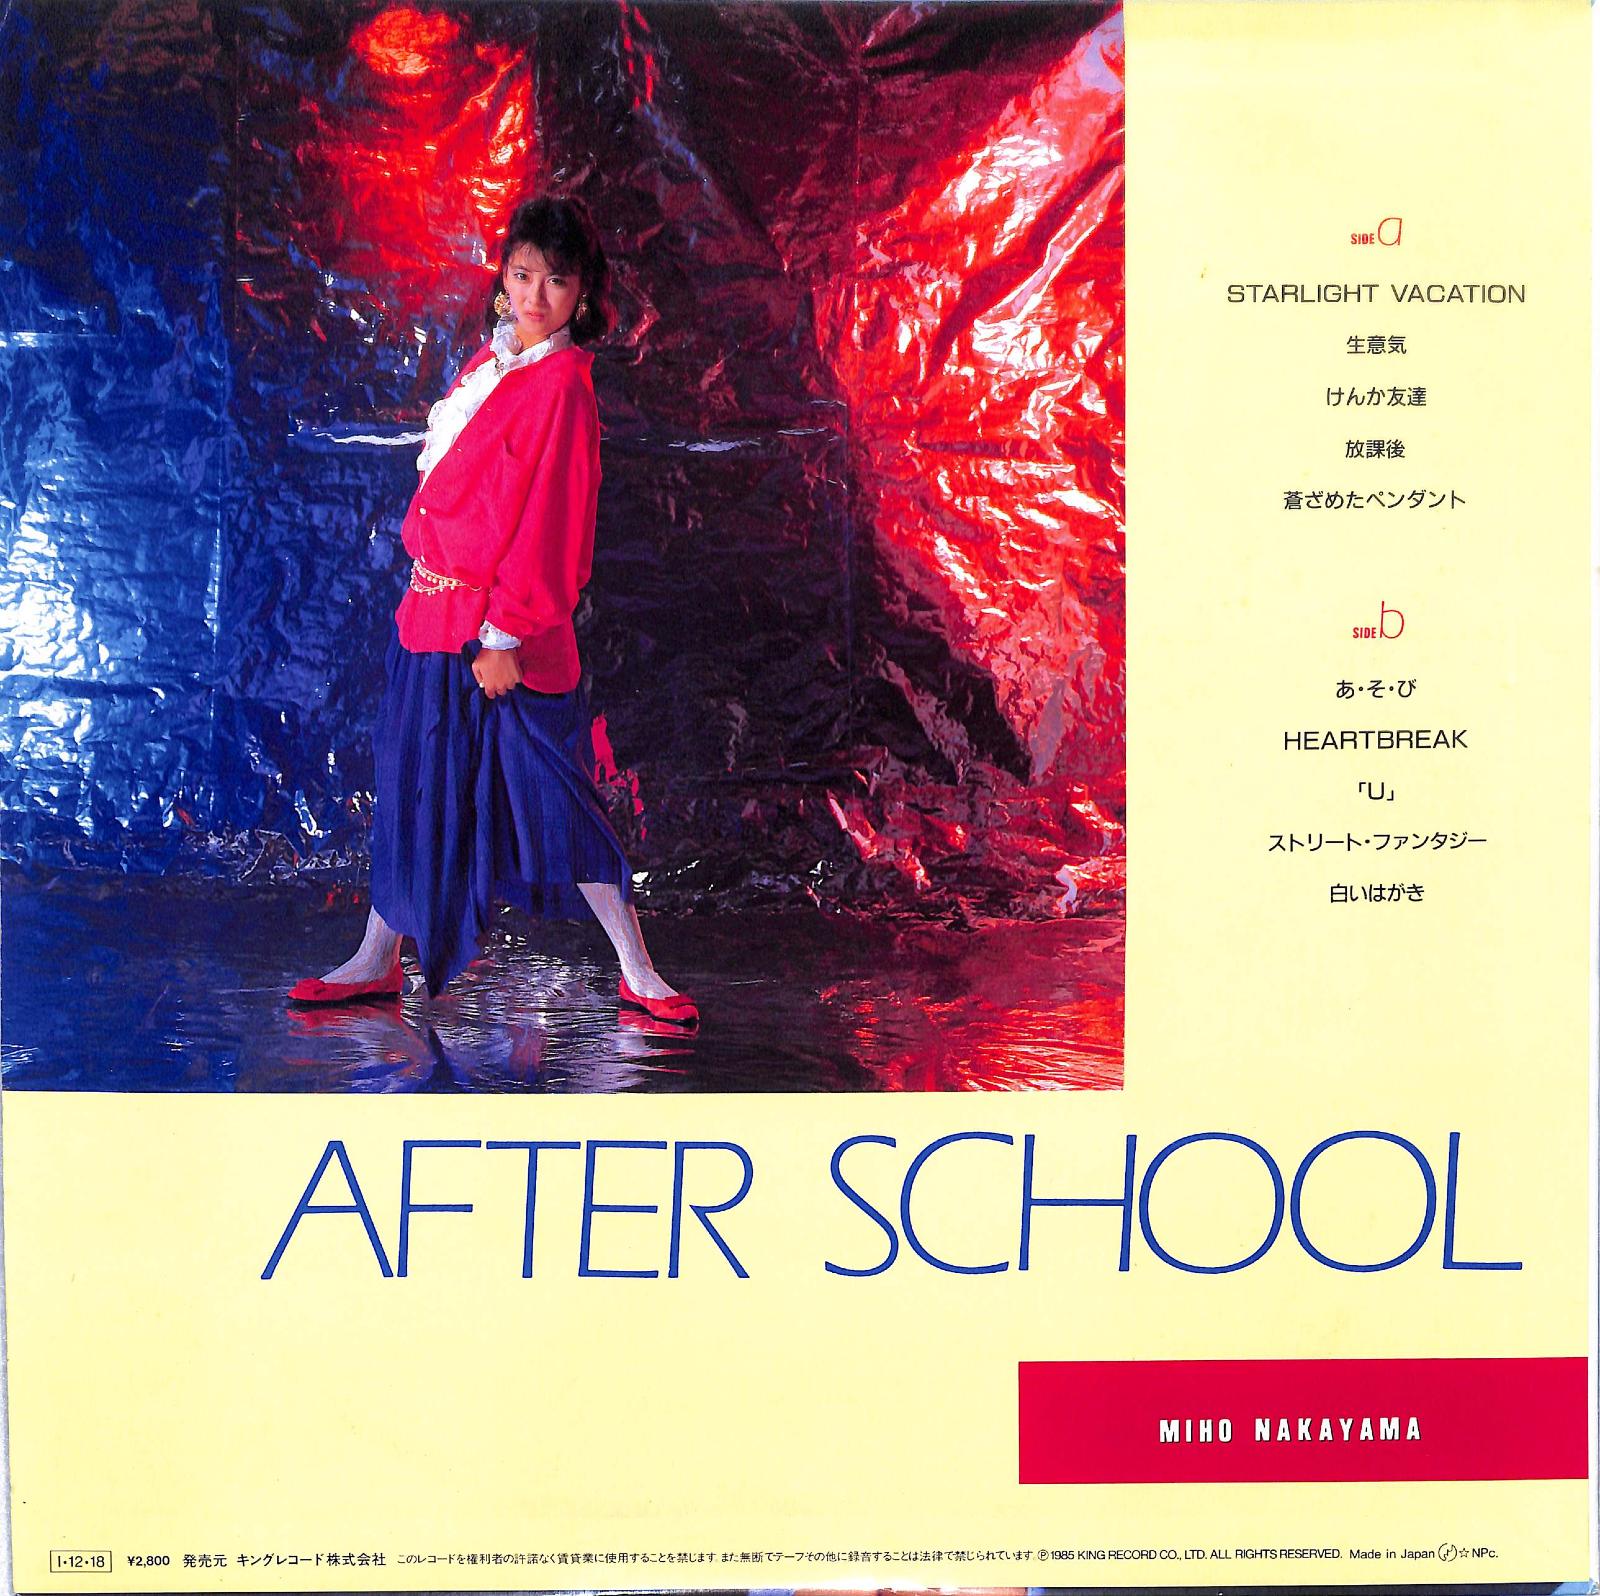 MIHO NAKAYAMA - After School